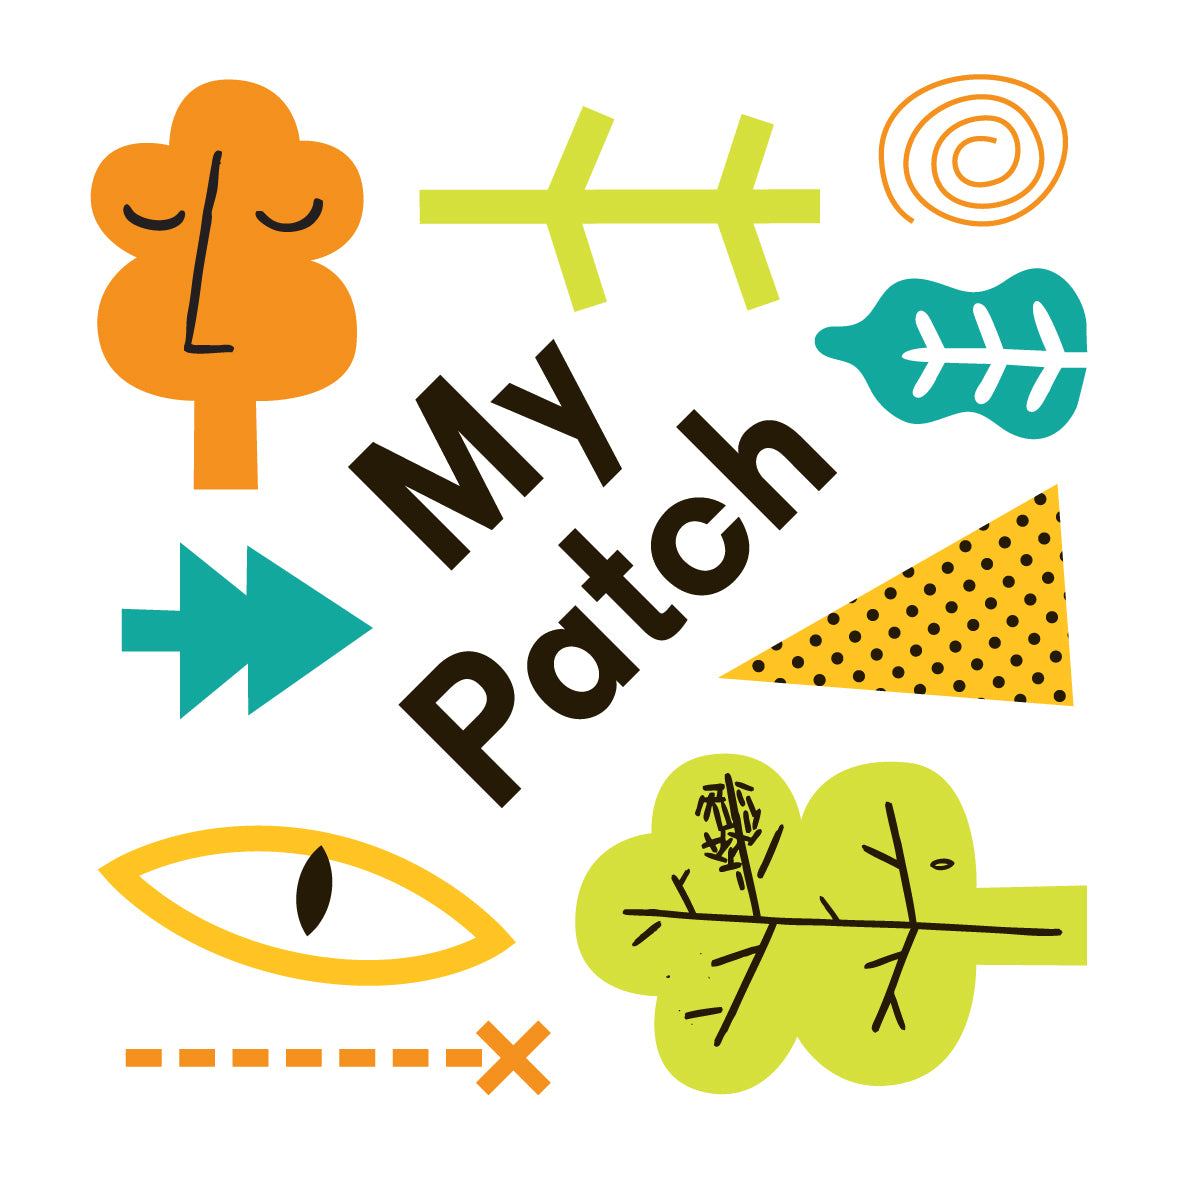 My Patch identity by Nick Deakin